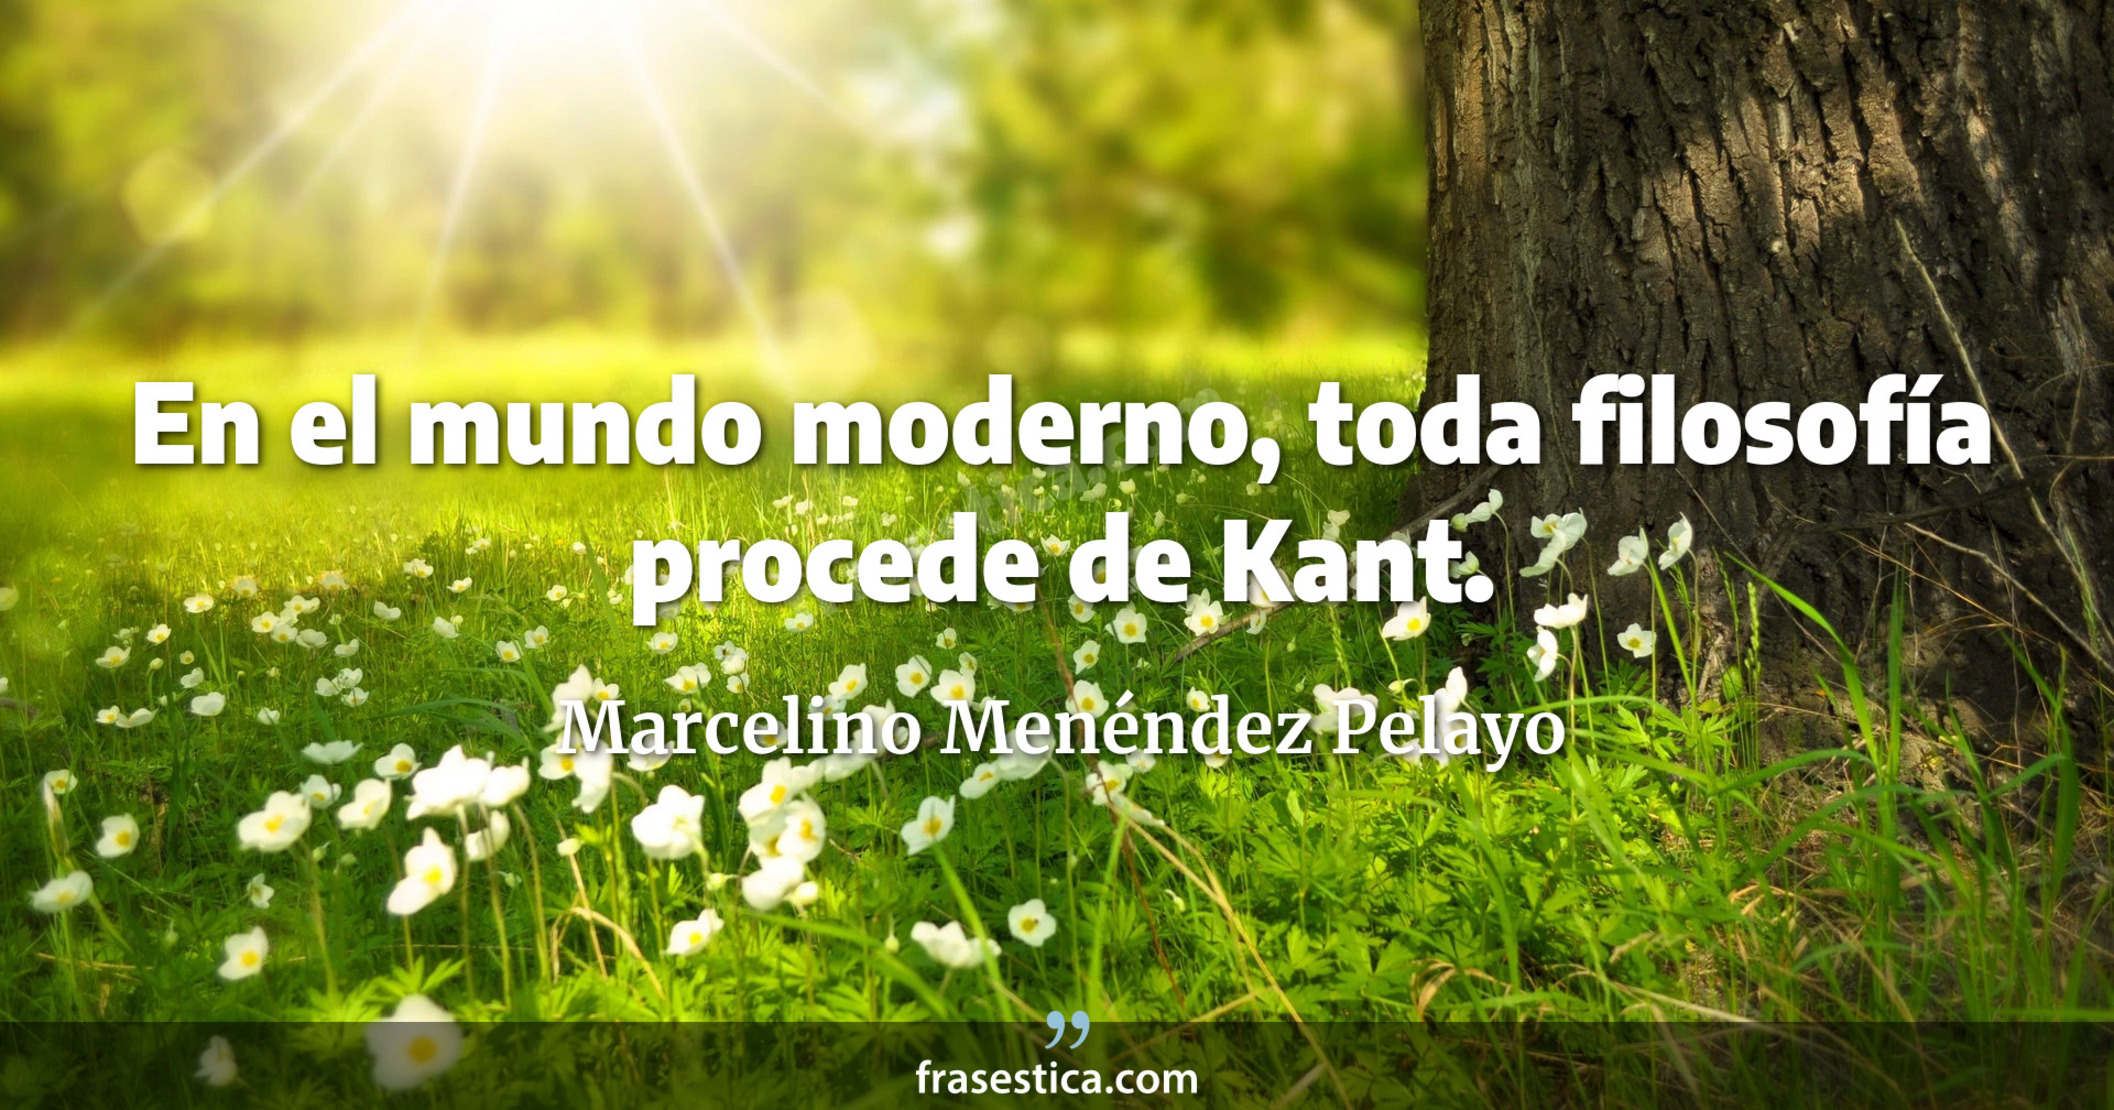 En el mundo moderno, toda filosofía procede de Kant. - Marcelino Menéndez Pelayo